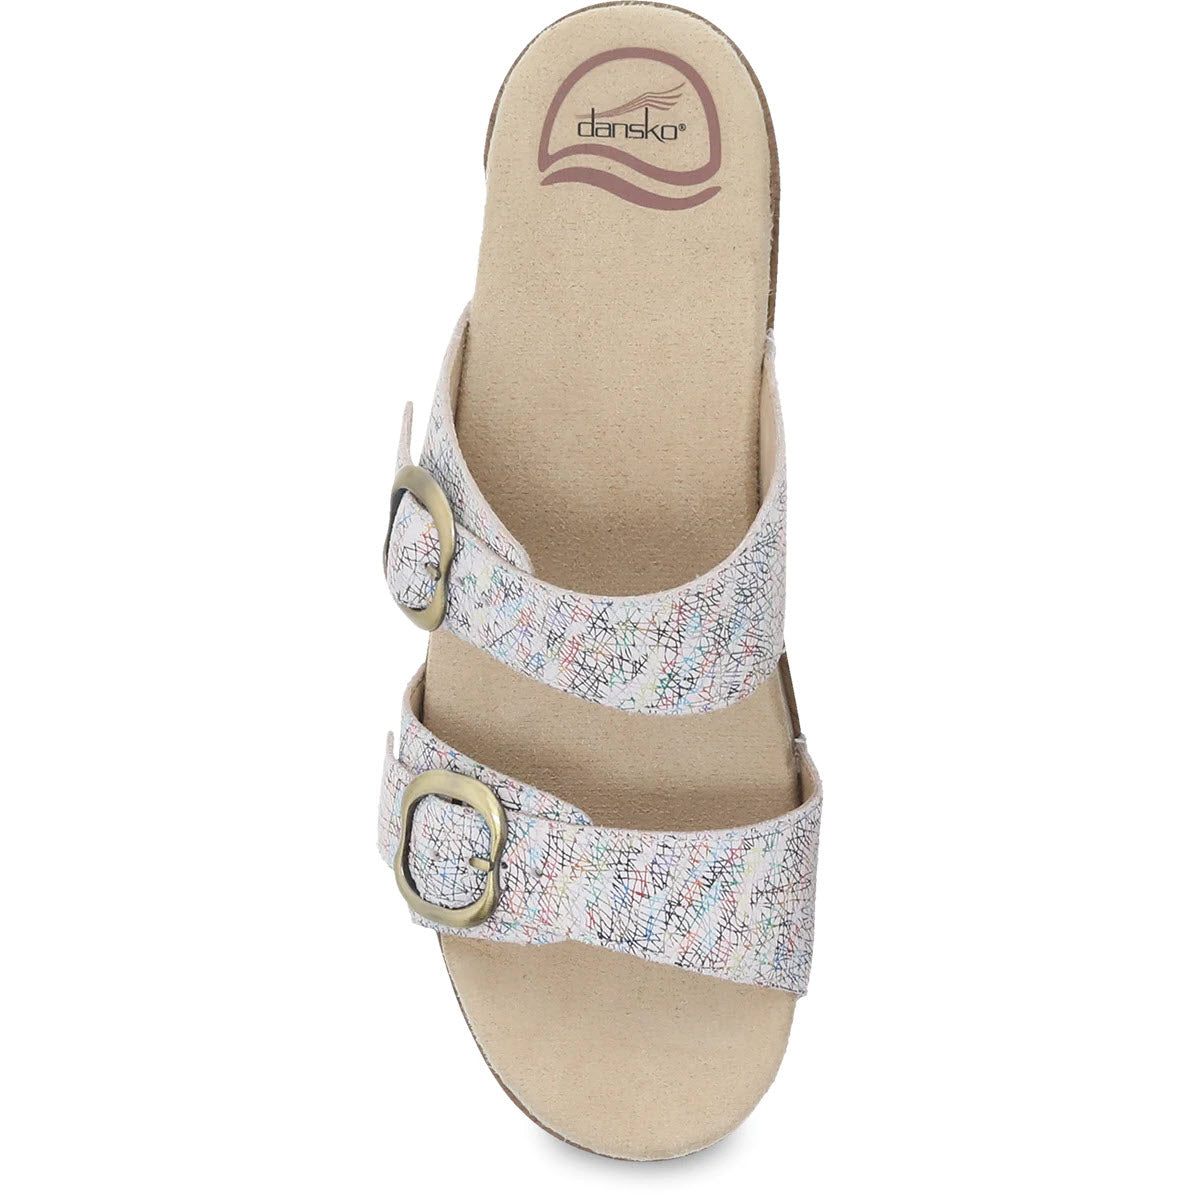 Dansko Sophie White Multi Slide Sandal, a comfort-minded women&#39;s sandal with adjustable straps and a patterned design.